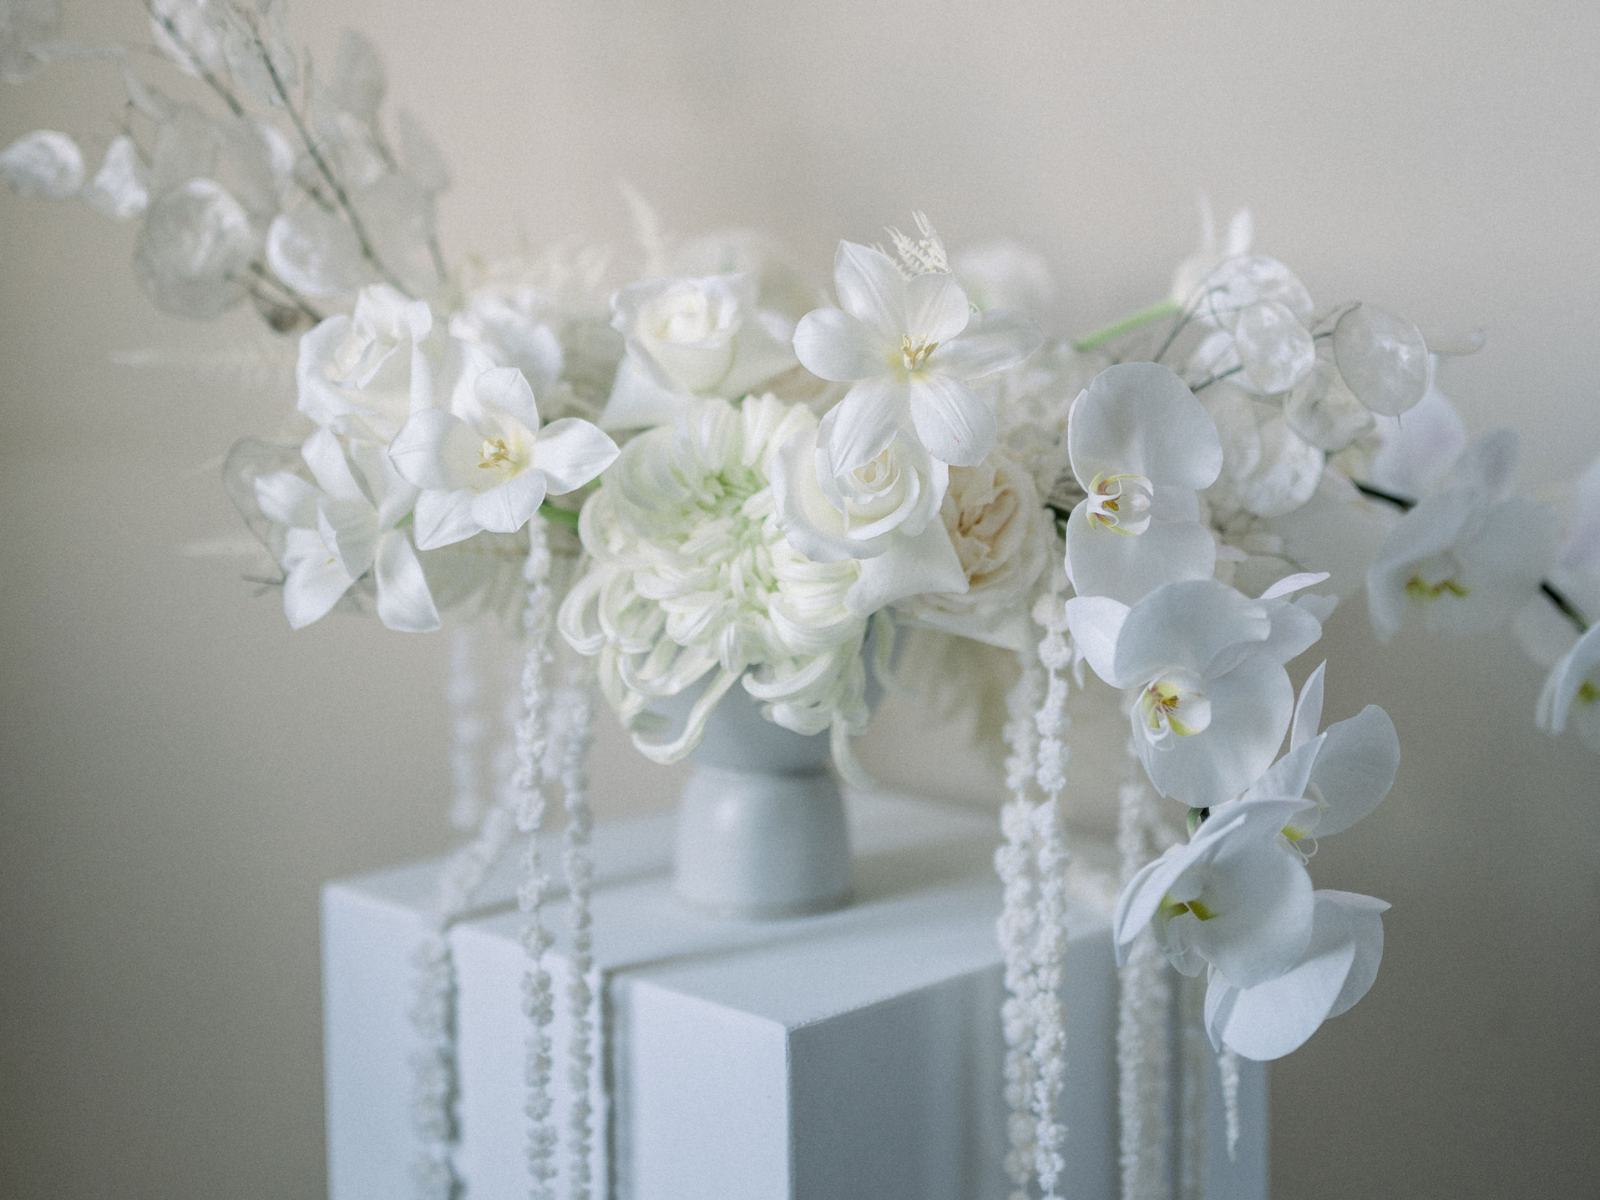 décoration de table mariage fleuriste neuville sur saone lyon